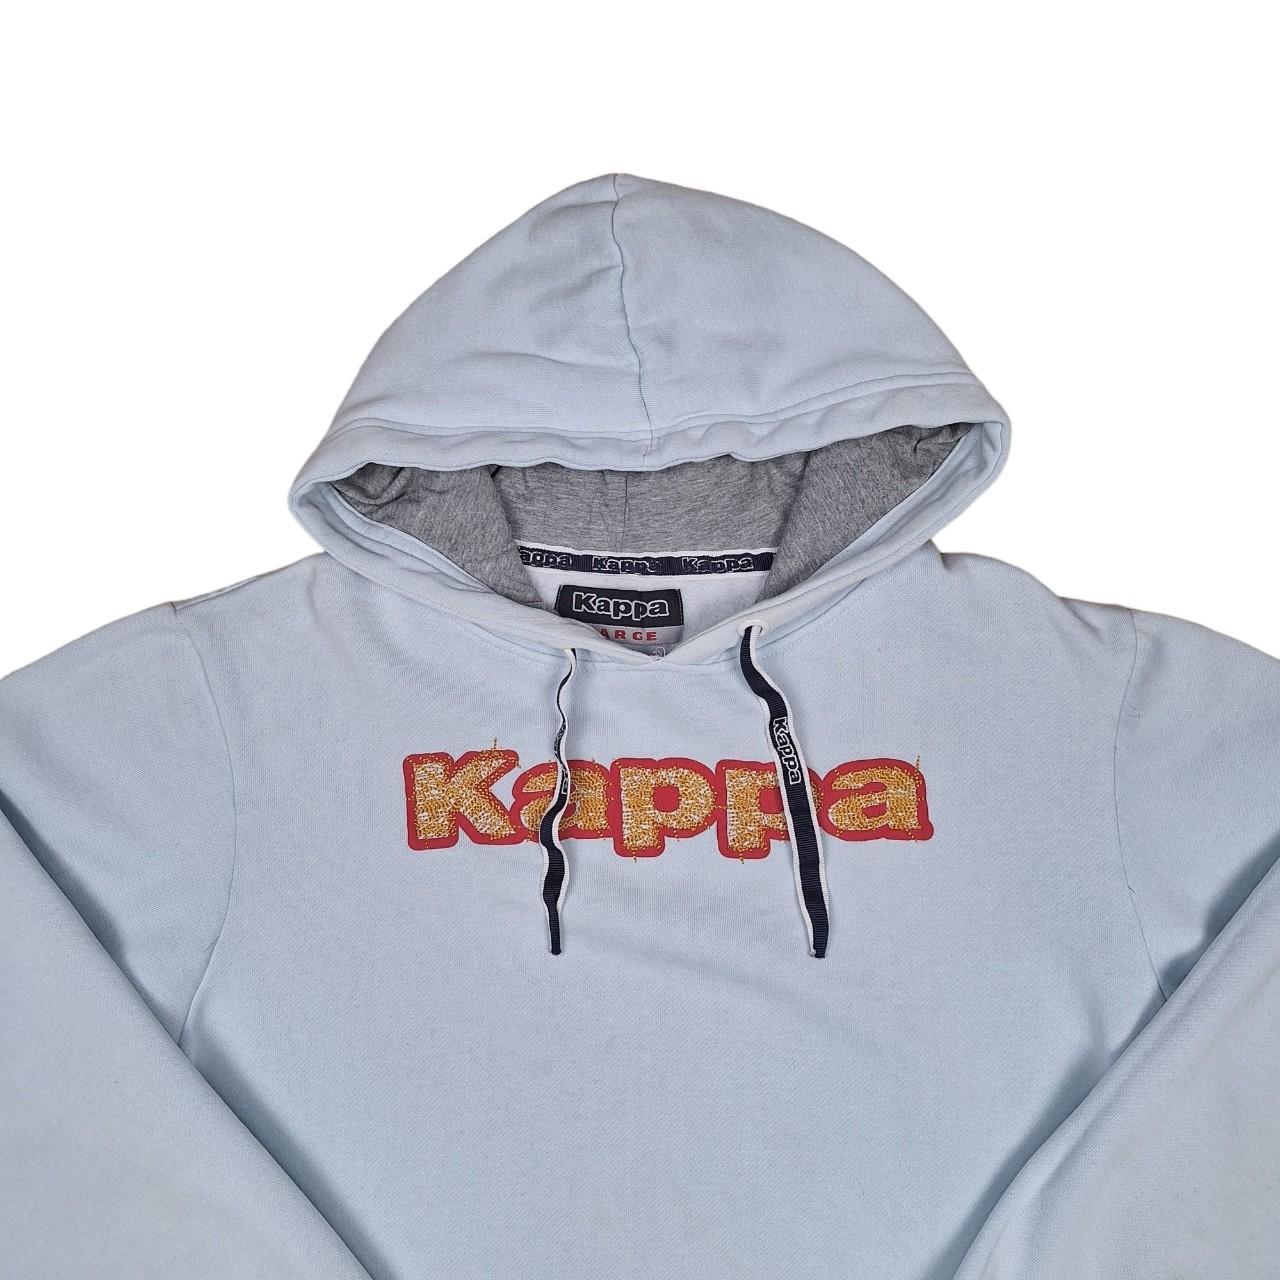 Kappa Hoodie. Light blue, Kappa hoodie. Large,... - Depop